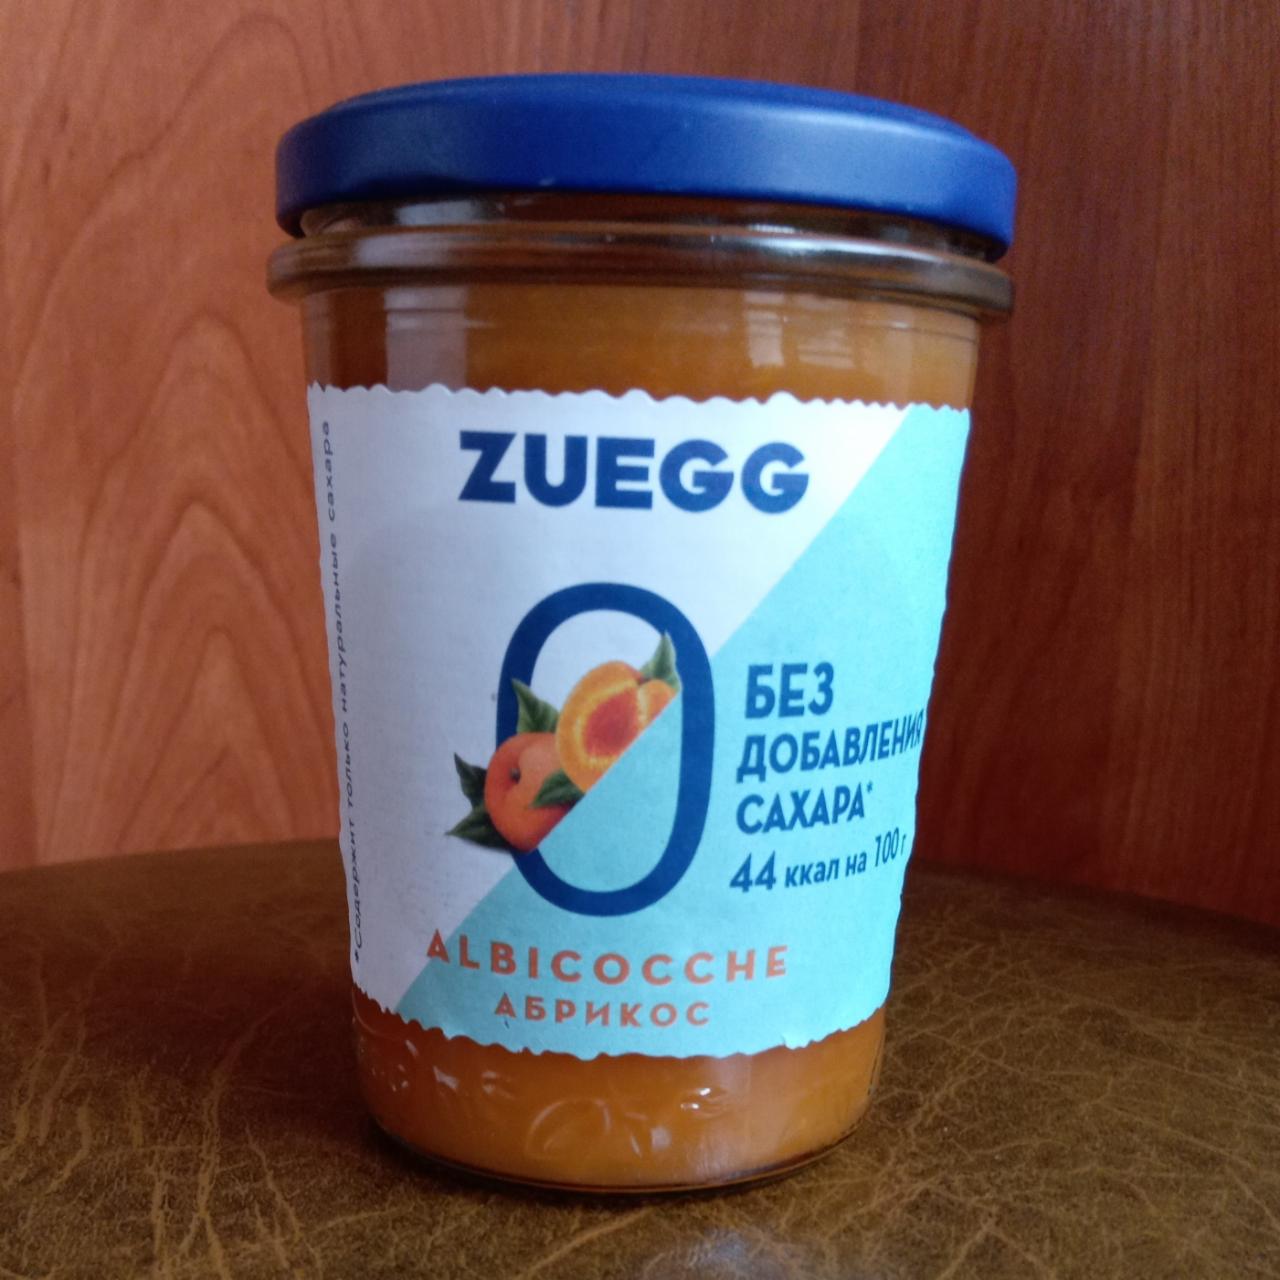 Фото - конфитюр из абрикосов с пониженной калорийностью Zuegg